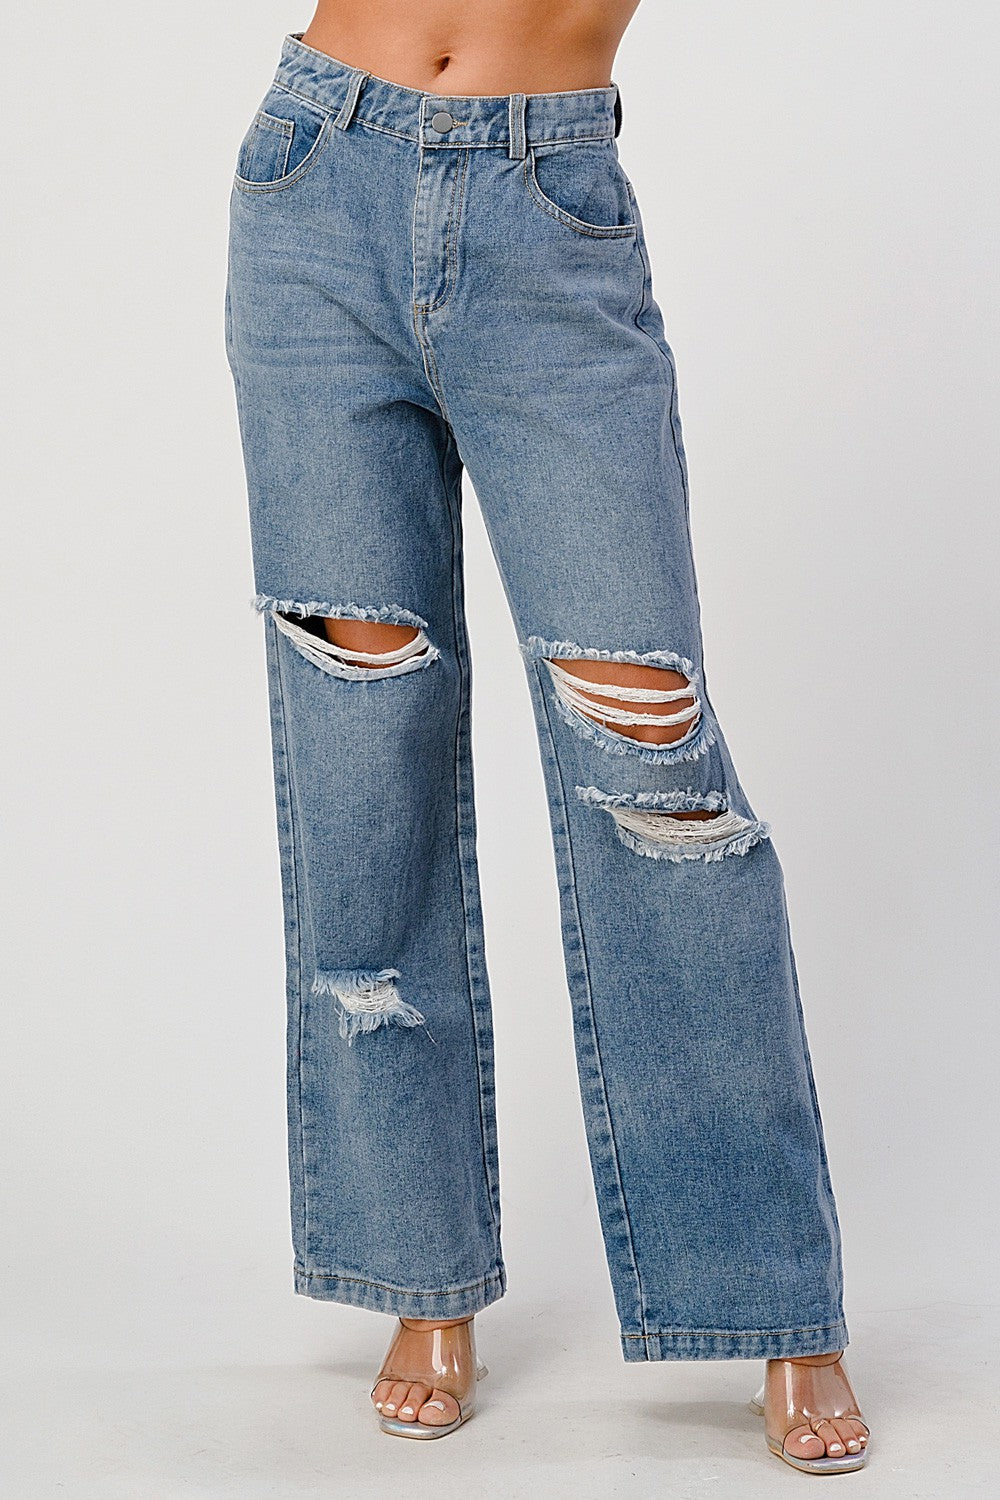 Concealment slack Decoration Gabby High Rise Distressed Jeans – D'La Mod Boutique